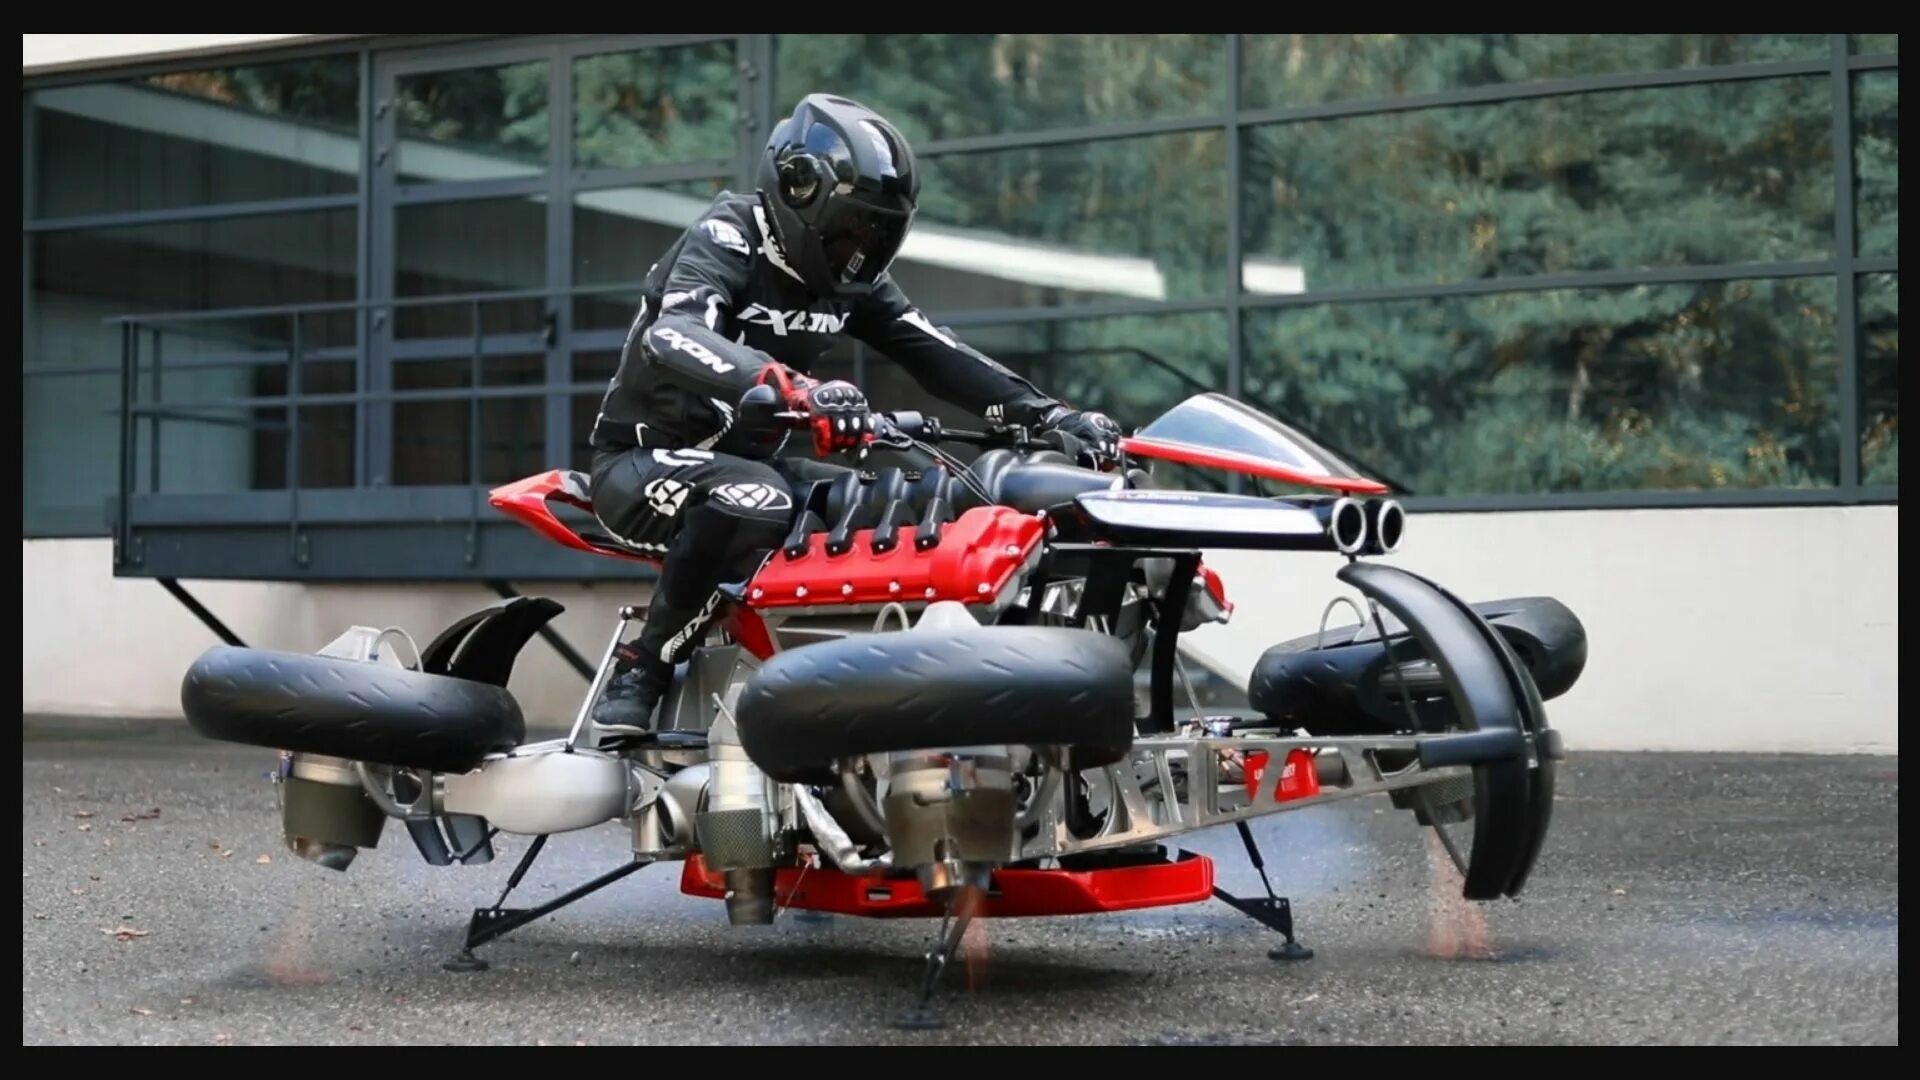 Купить воздушный мотоцикл. Летающий мотоцикл-трансформер Lazareth. Летающий байк Lazareth LMV 496. Lazareth lm847. Летающий мотоцикл la Moto volante 496.